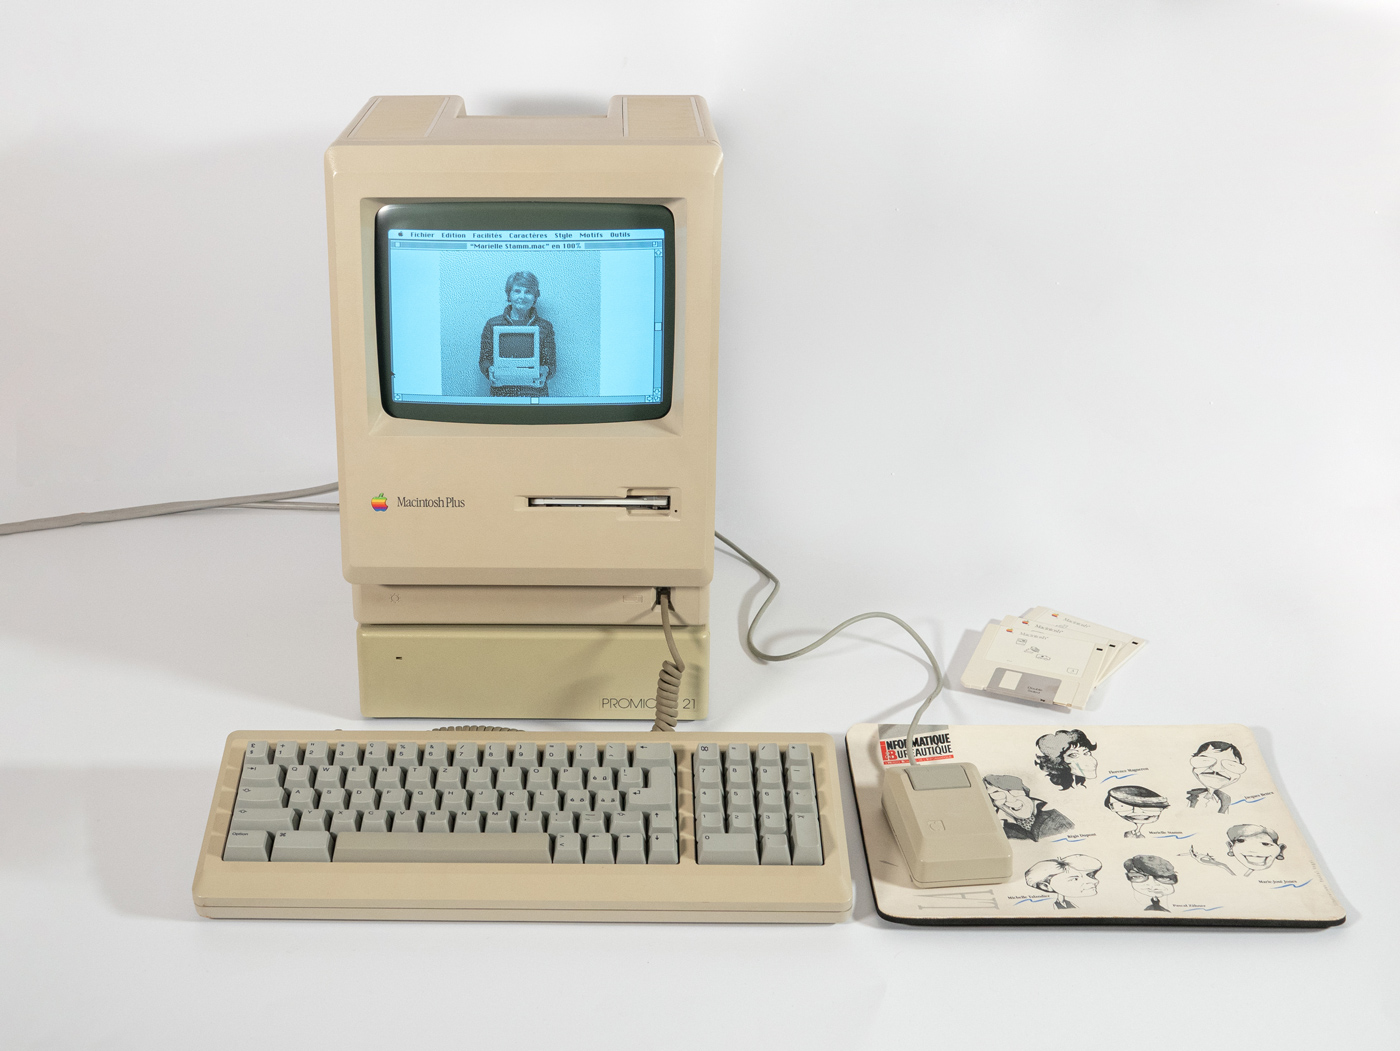 Marielle Stamm dans le Macintosh Plus, le premier ordinateur à pénétrer physiquement dans la salle de rédaction d’Informatique & Bureautique en 1987. Il transforma en profondeur la manière de travailler de la pionnière du journalisme en informatique et d’autres acteurs de la presse.